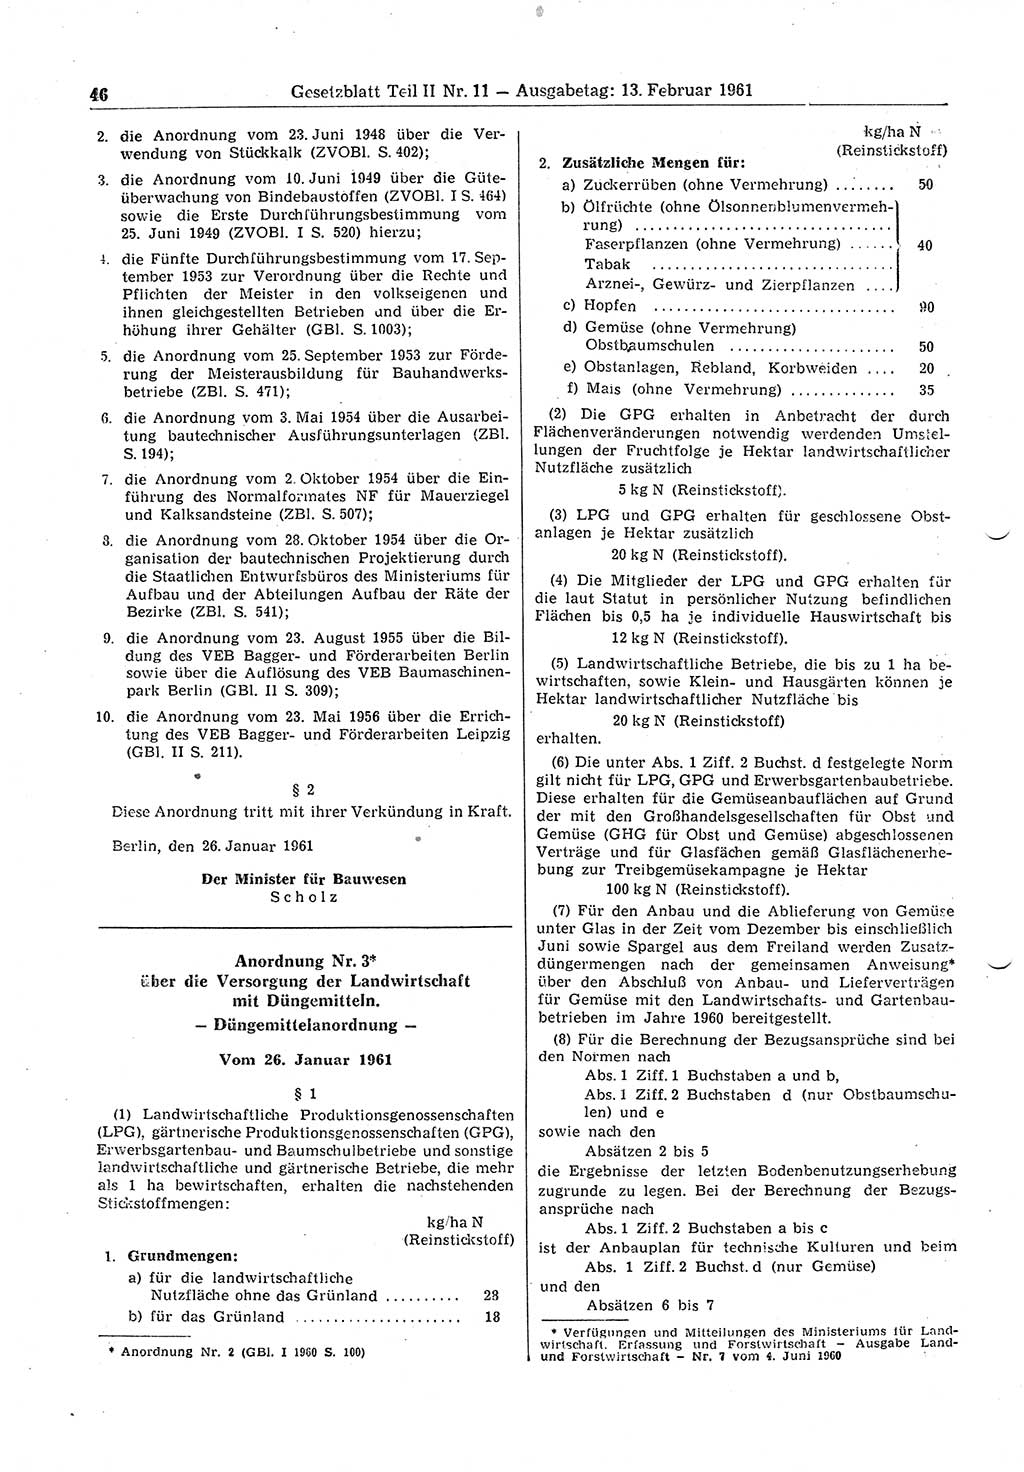 Gesetzblatt (GBl.) der Deutschen Demokratischen Republik (DDR) Teil ⅠⅠ 1961, Seite 46 (GBl. DDR ⅠⅠ 1961, S. 46)